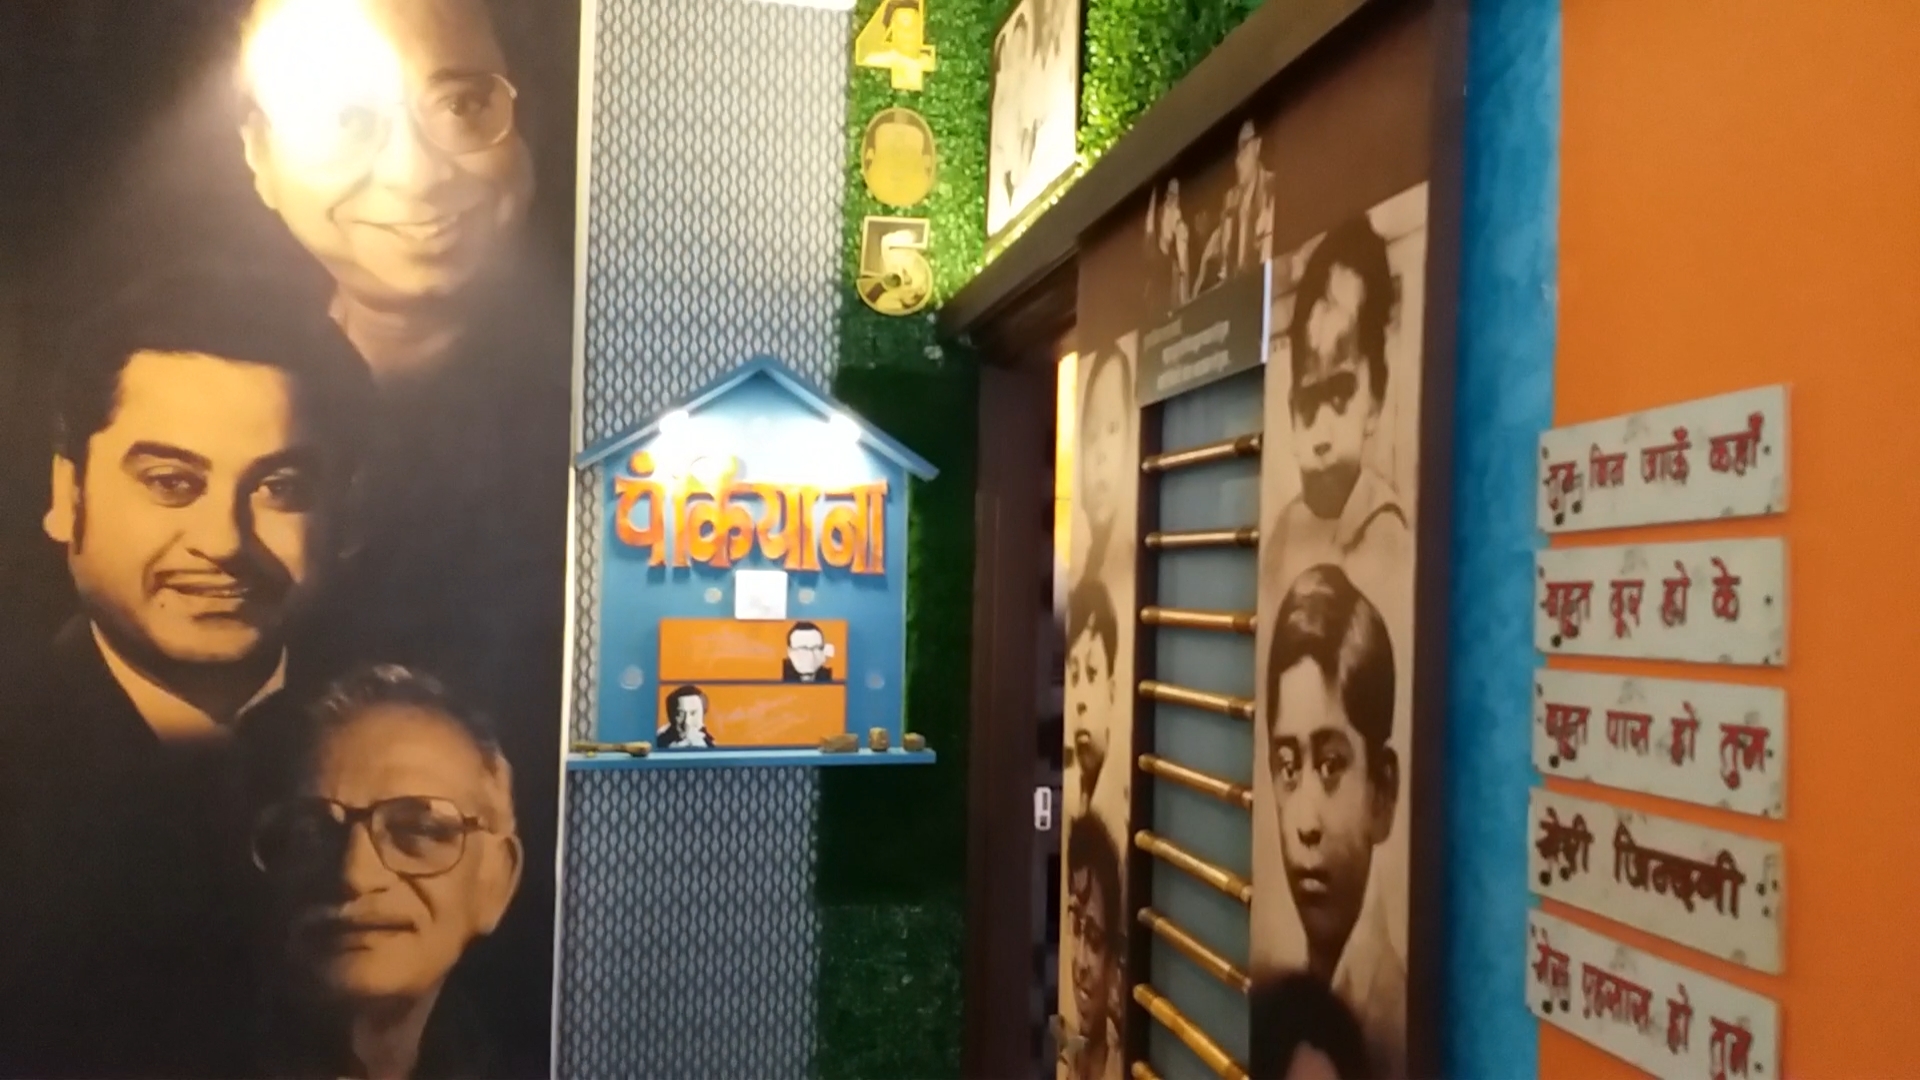 Museum built in memory of Kishore Kumar